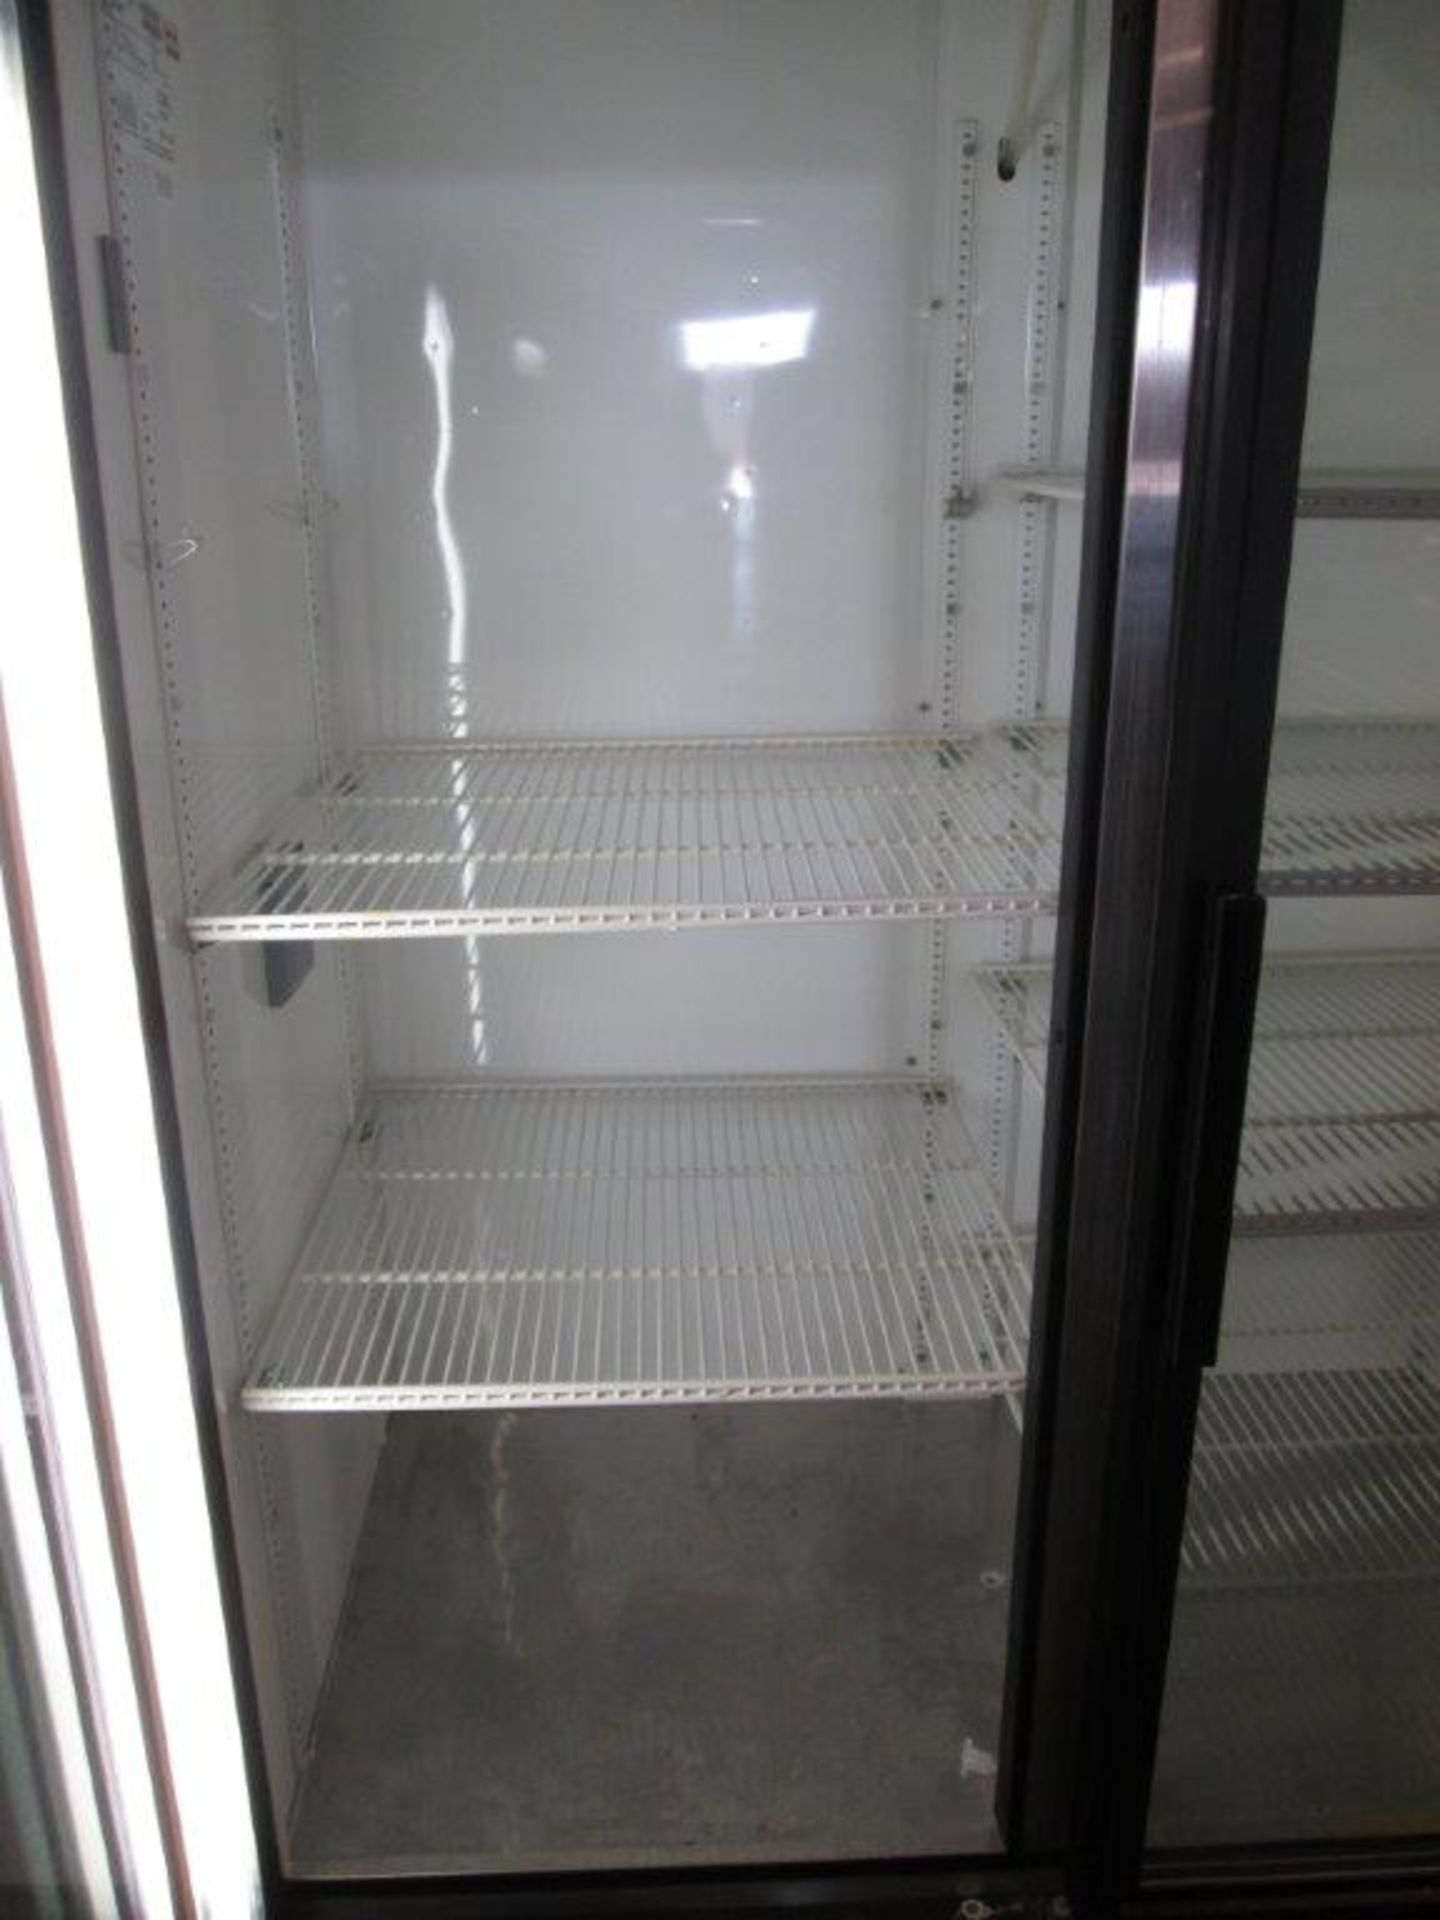 VWR GDM-72 Chromatogrophy Refrigerator - Image 2 of 3